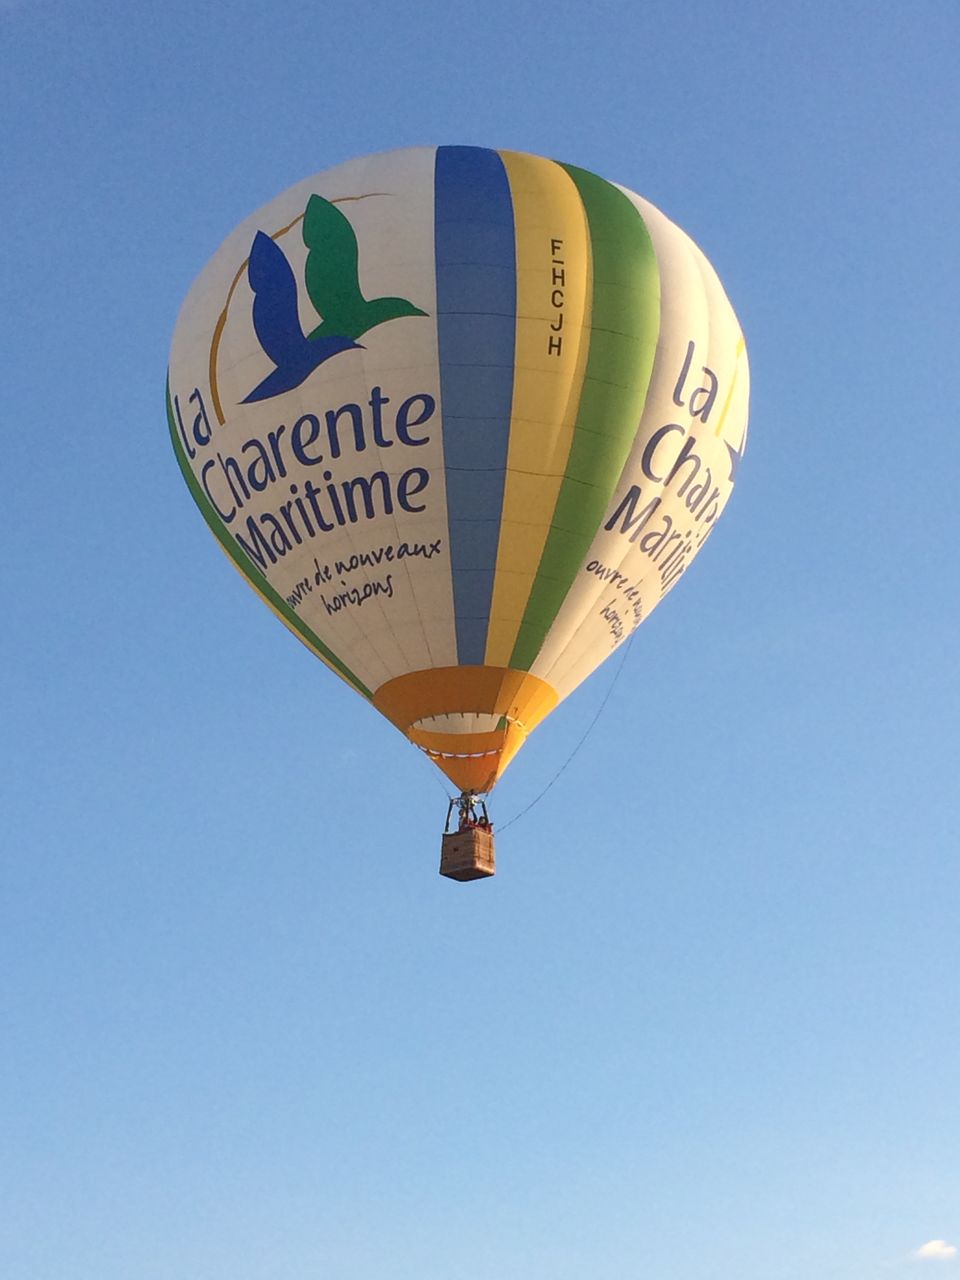 Jonzac vu du ciel en montgolfière - Jonzac Haute Saintonge Tourisme